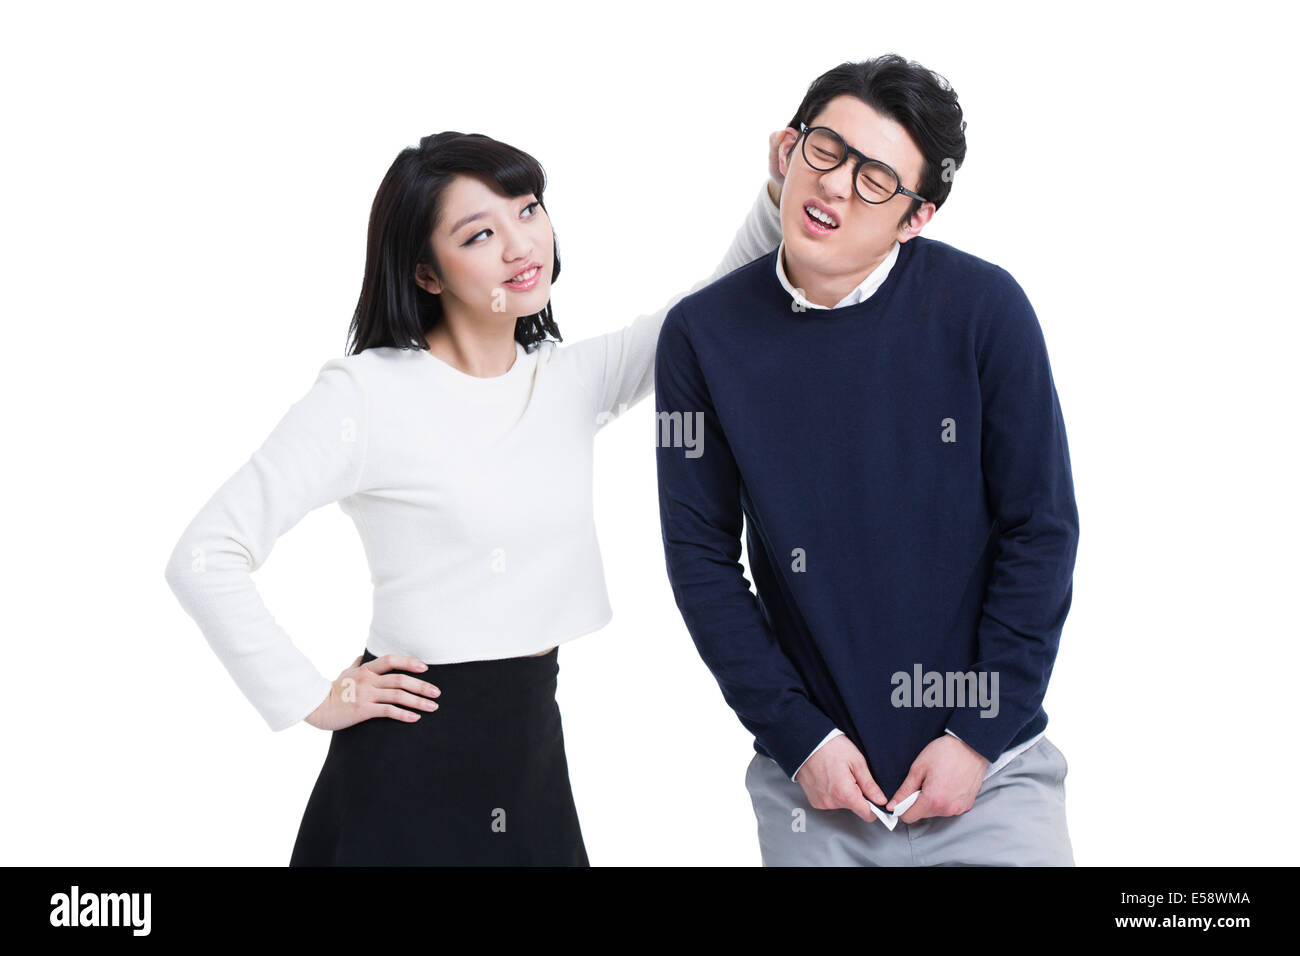 Jeune couple humoristique Banque D'Images